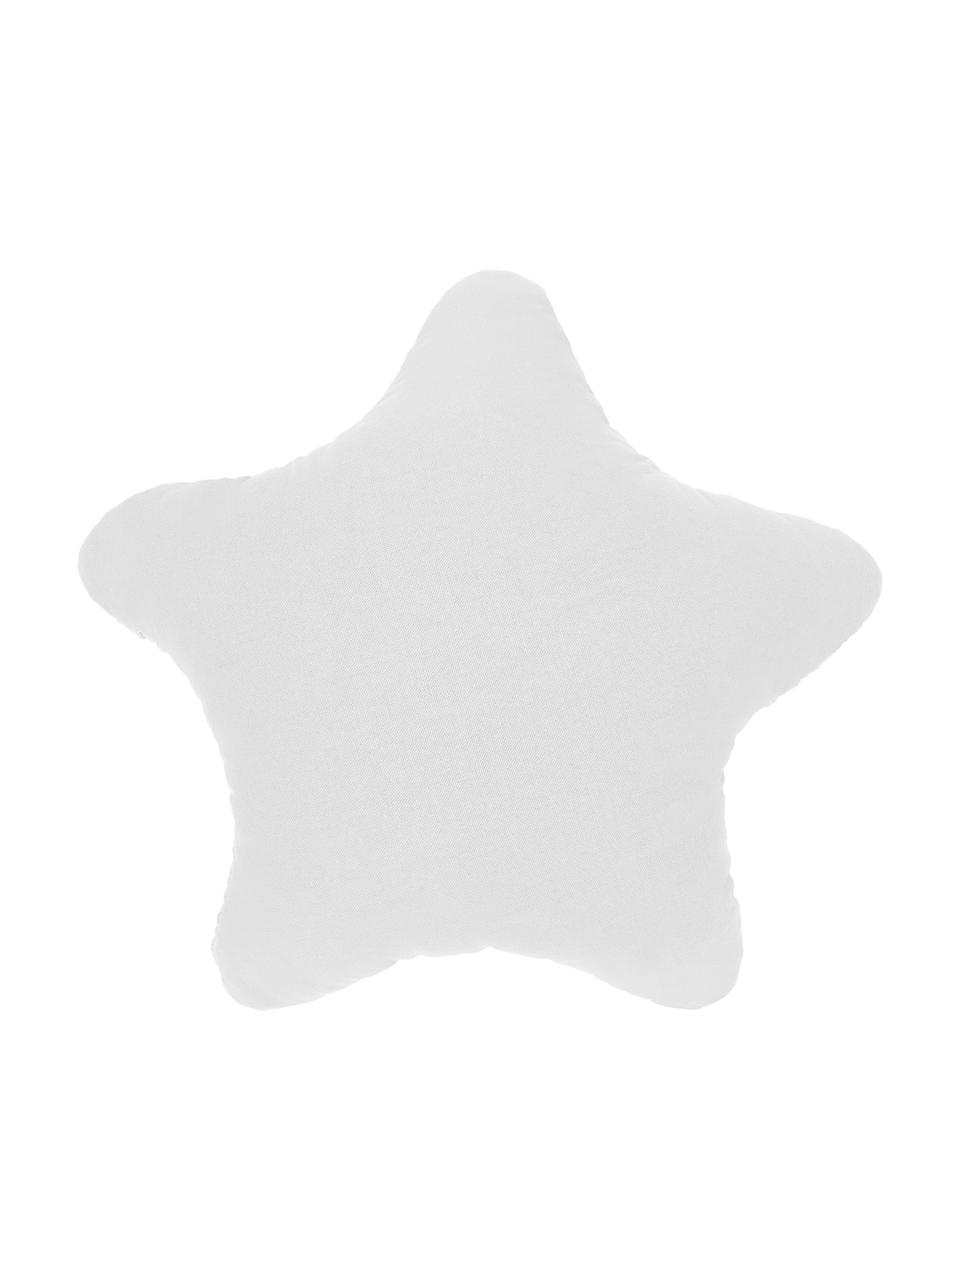 Grobstrick-Kissen Sparkle in Wollweiß, mit Inlett, Bezug: 100% Baumwolle, Wollweiß, 45 x 45 cm